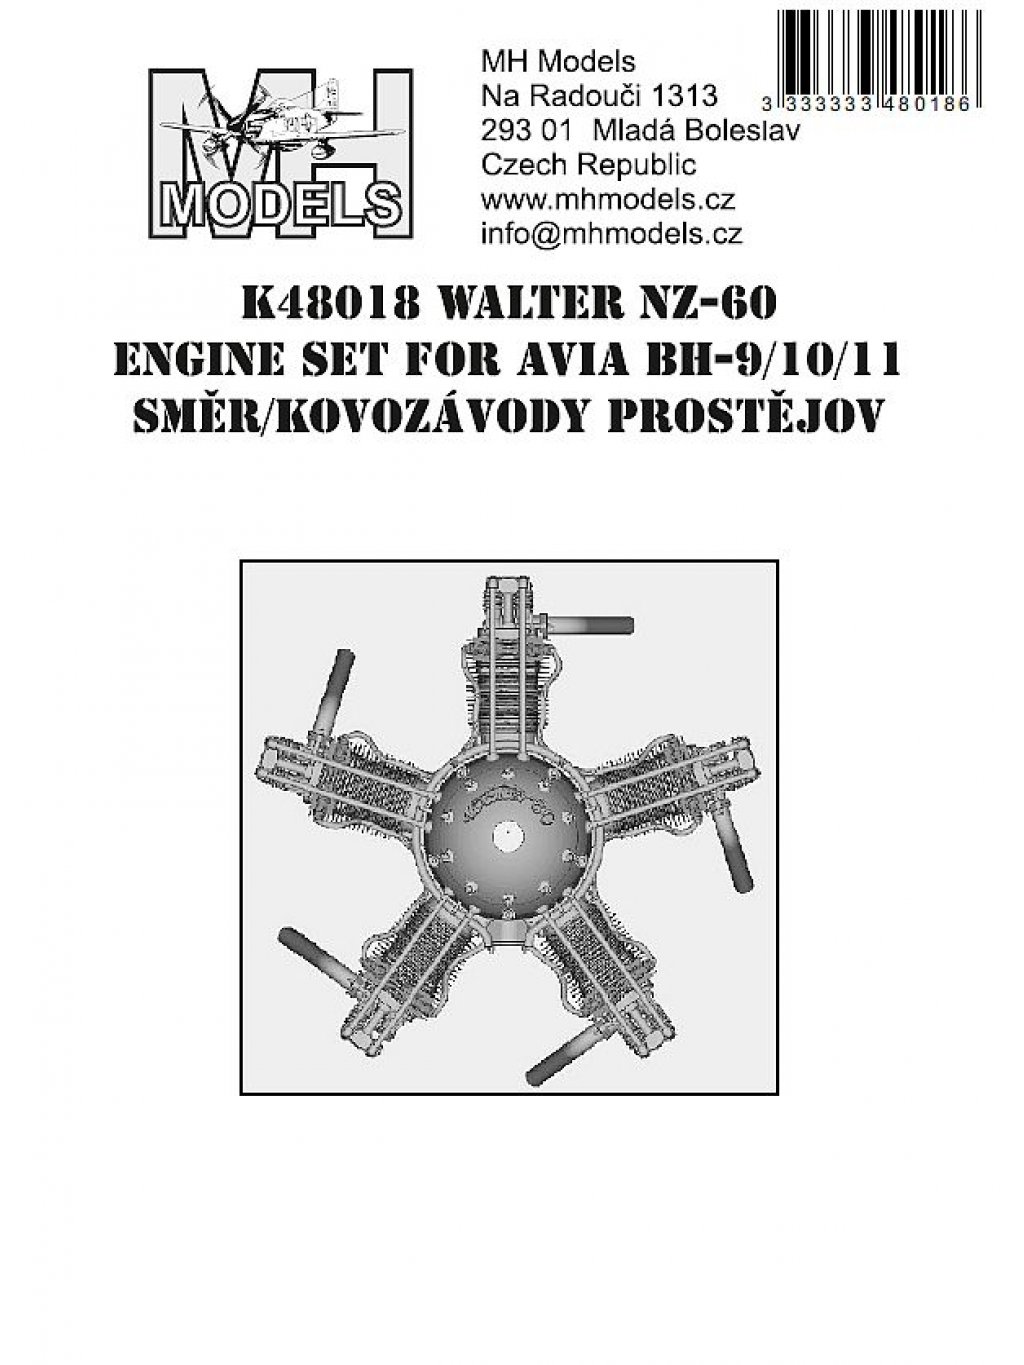 Walter NZ-60 engine set for Avia BH-9/10/11 Směr/Kovozávody Prostějov